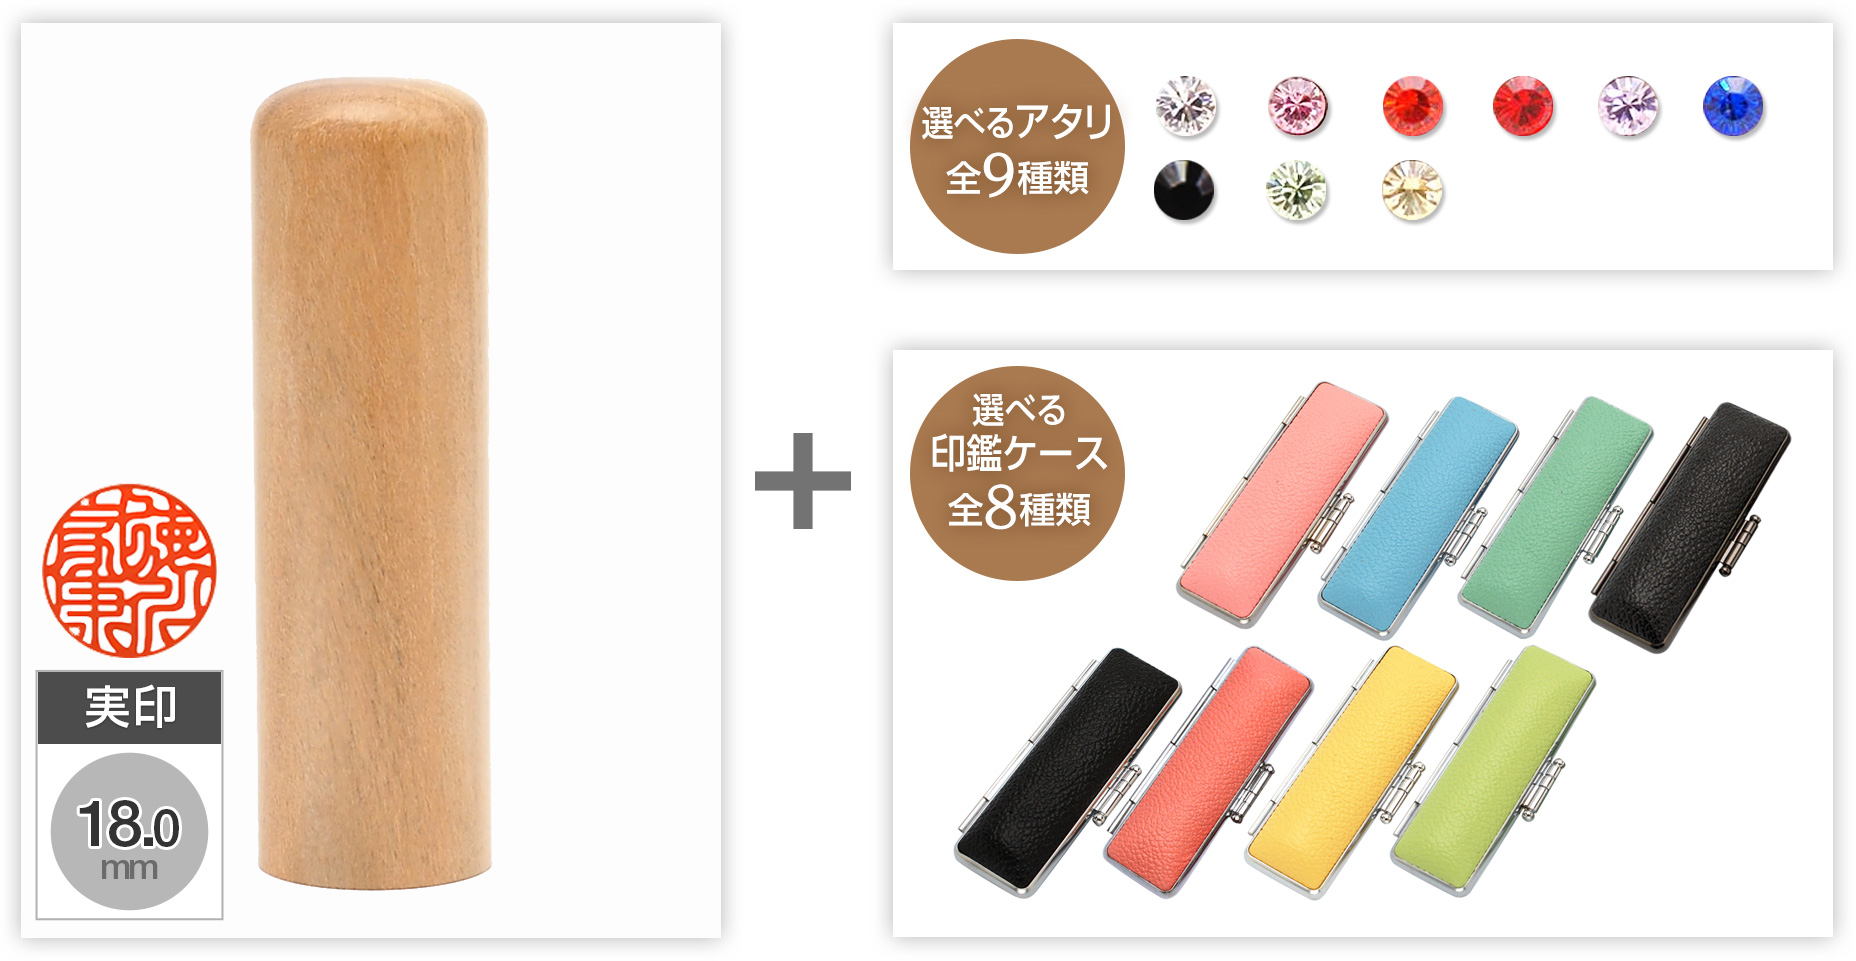 【セール】実印山桜18.0mm選べるアタリ・印鑑ケース セット